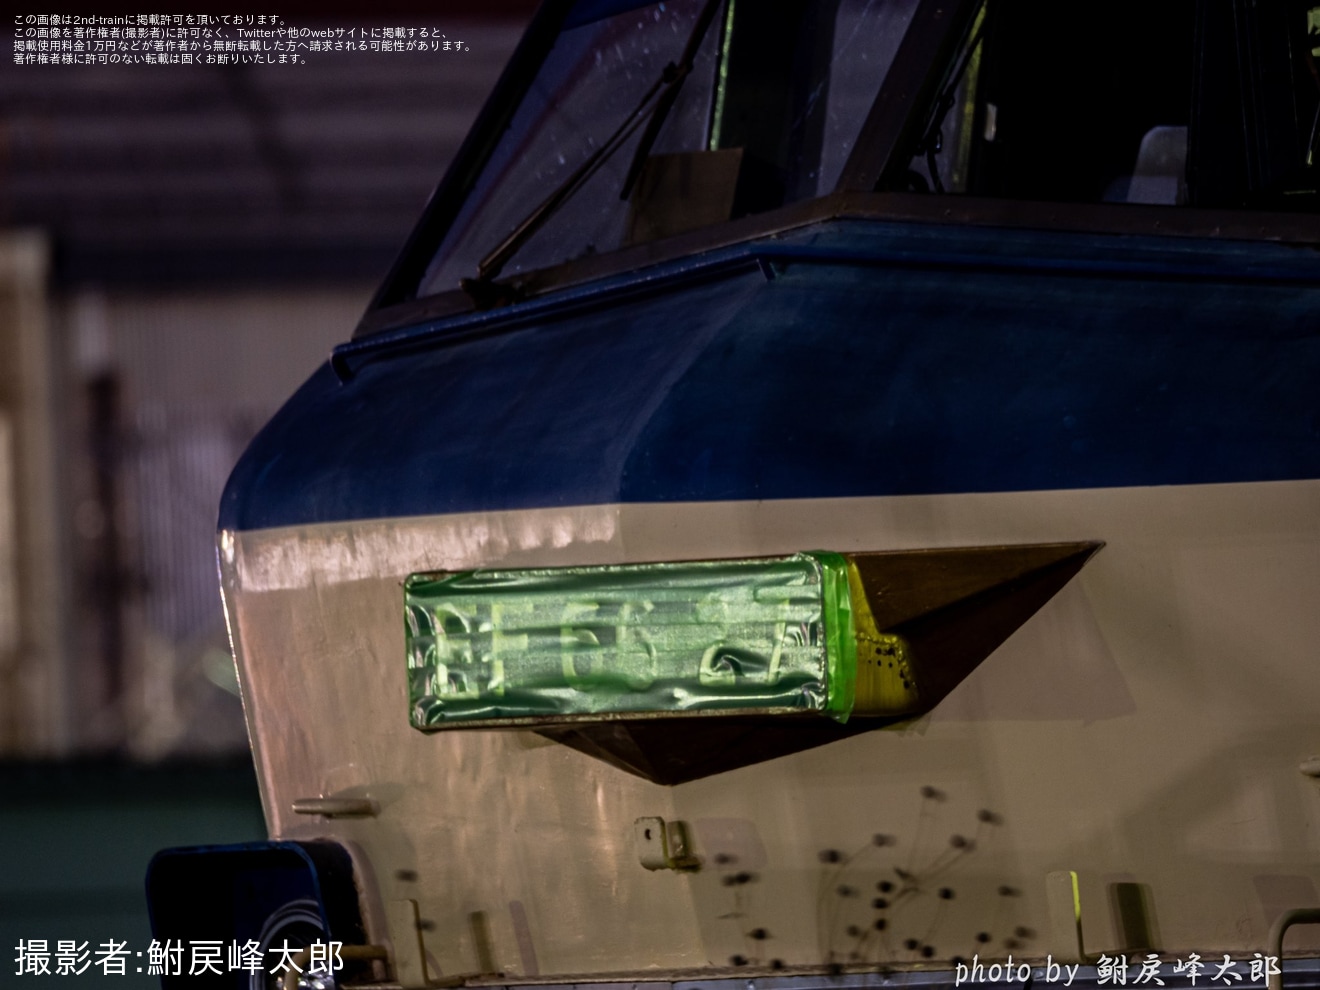 【JR貨】EF66-27のナンバープレートにマスキングテープの拡大写真